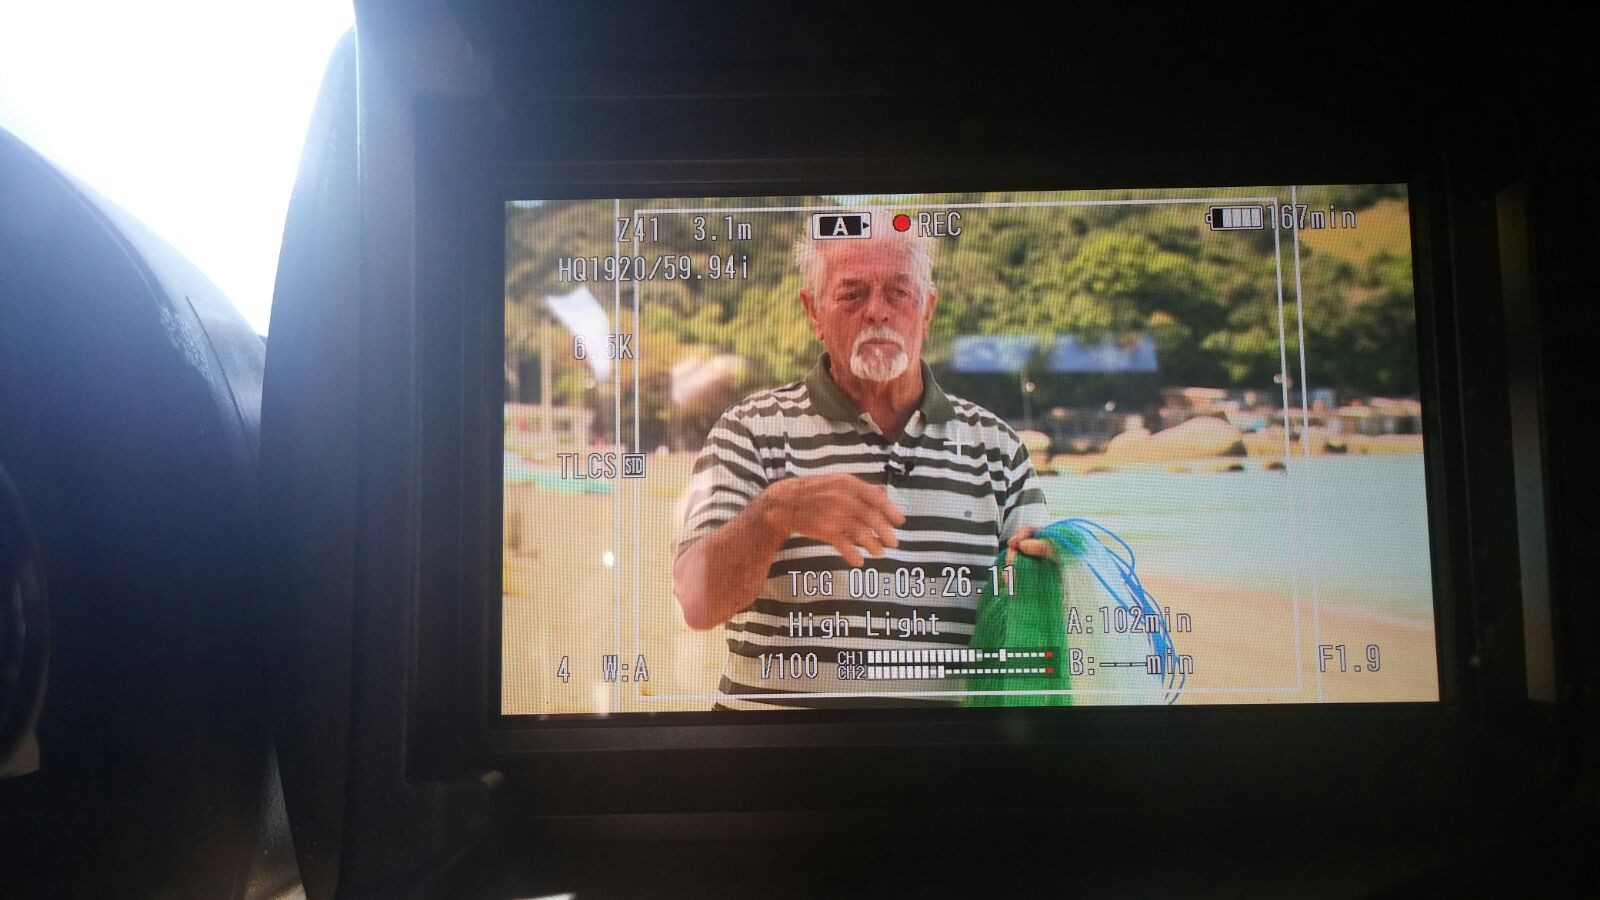 O pescador Gabi vai contar muitas histórias no Mistura (Foto: RBS TV/Divulgação)